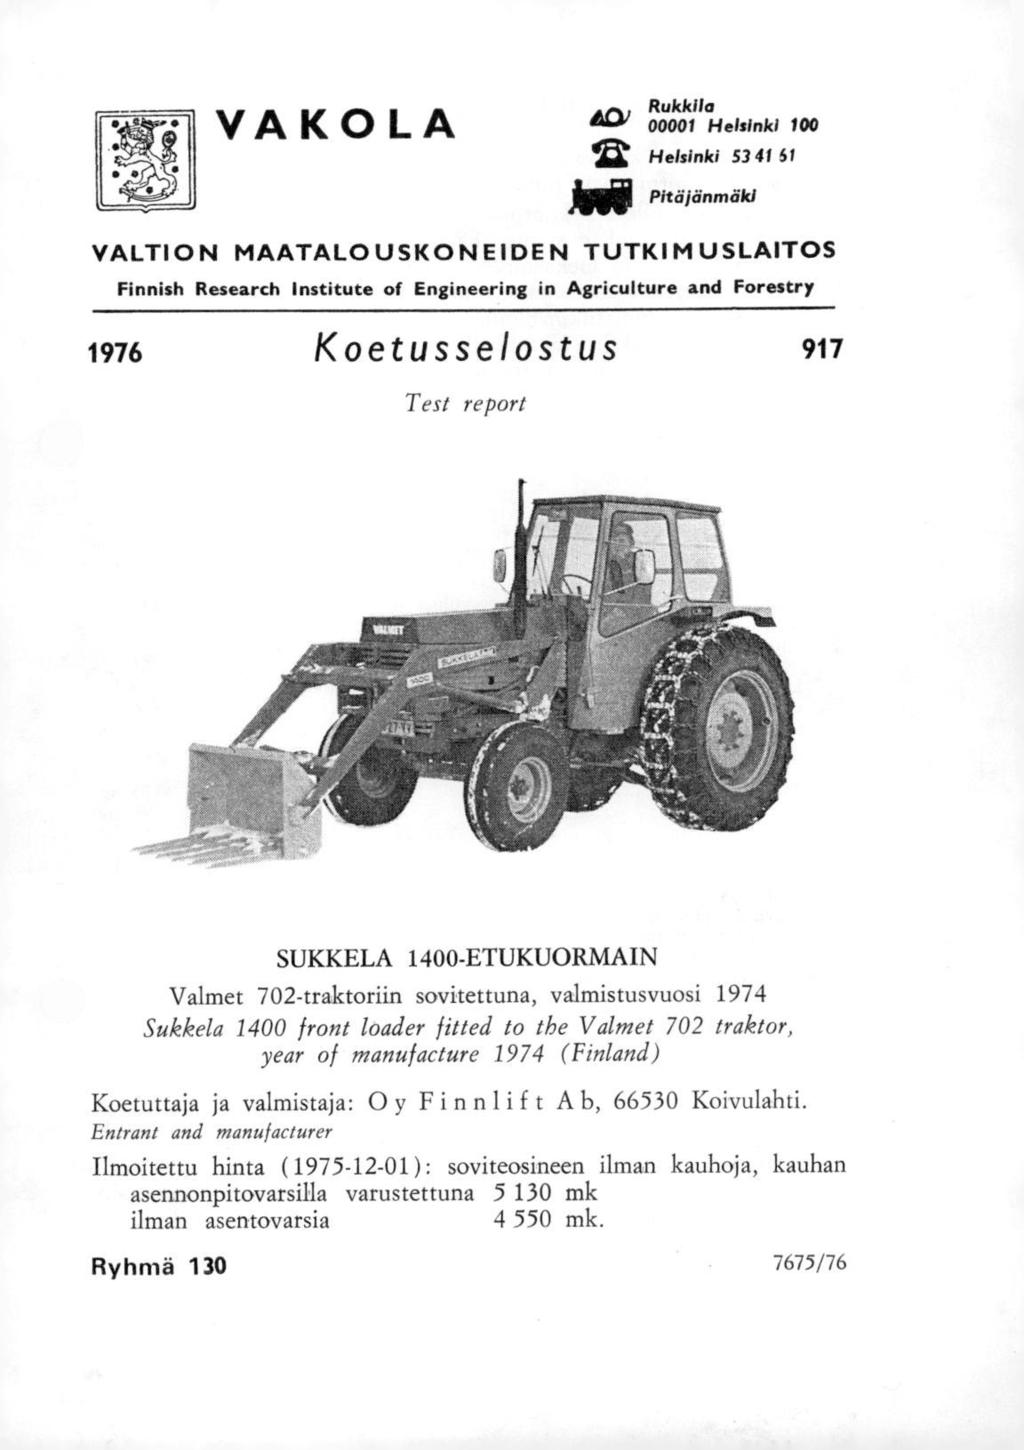 VAKOLA Rukkila 4C)) 00001 Helsinki 100 Helsinki 53 4151 JIM Pitäjänmäki VALTION MAATALOUSKONEIDEN TUTKIMUSLAITOS Finnish Research Institute of Engineering in Agriculture and Forestry 1976